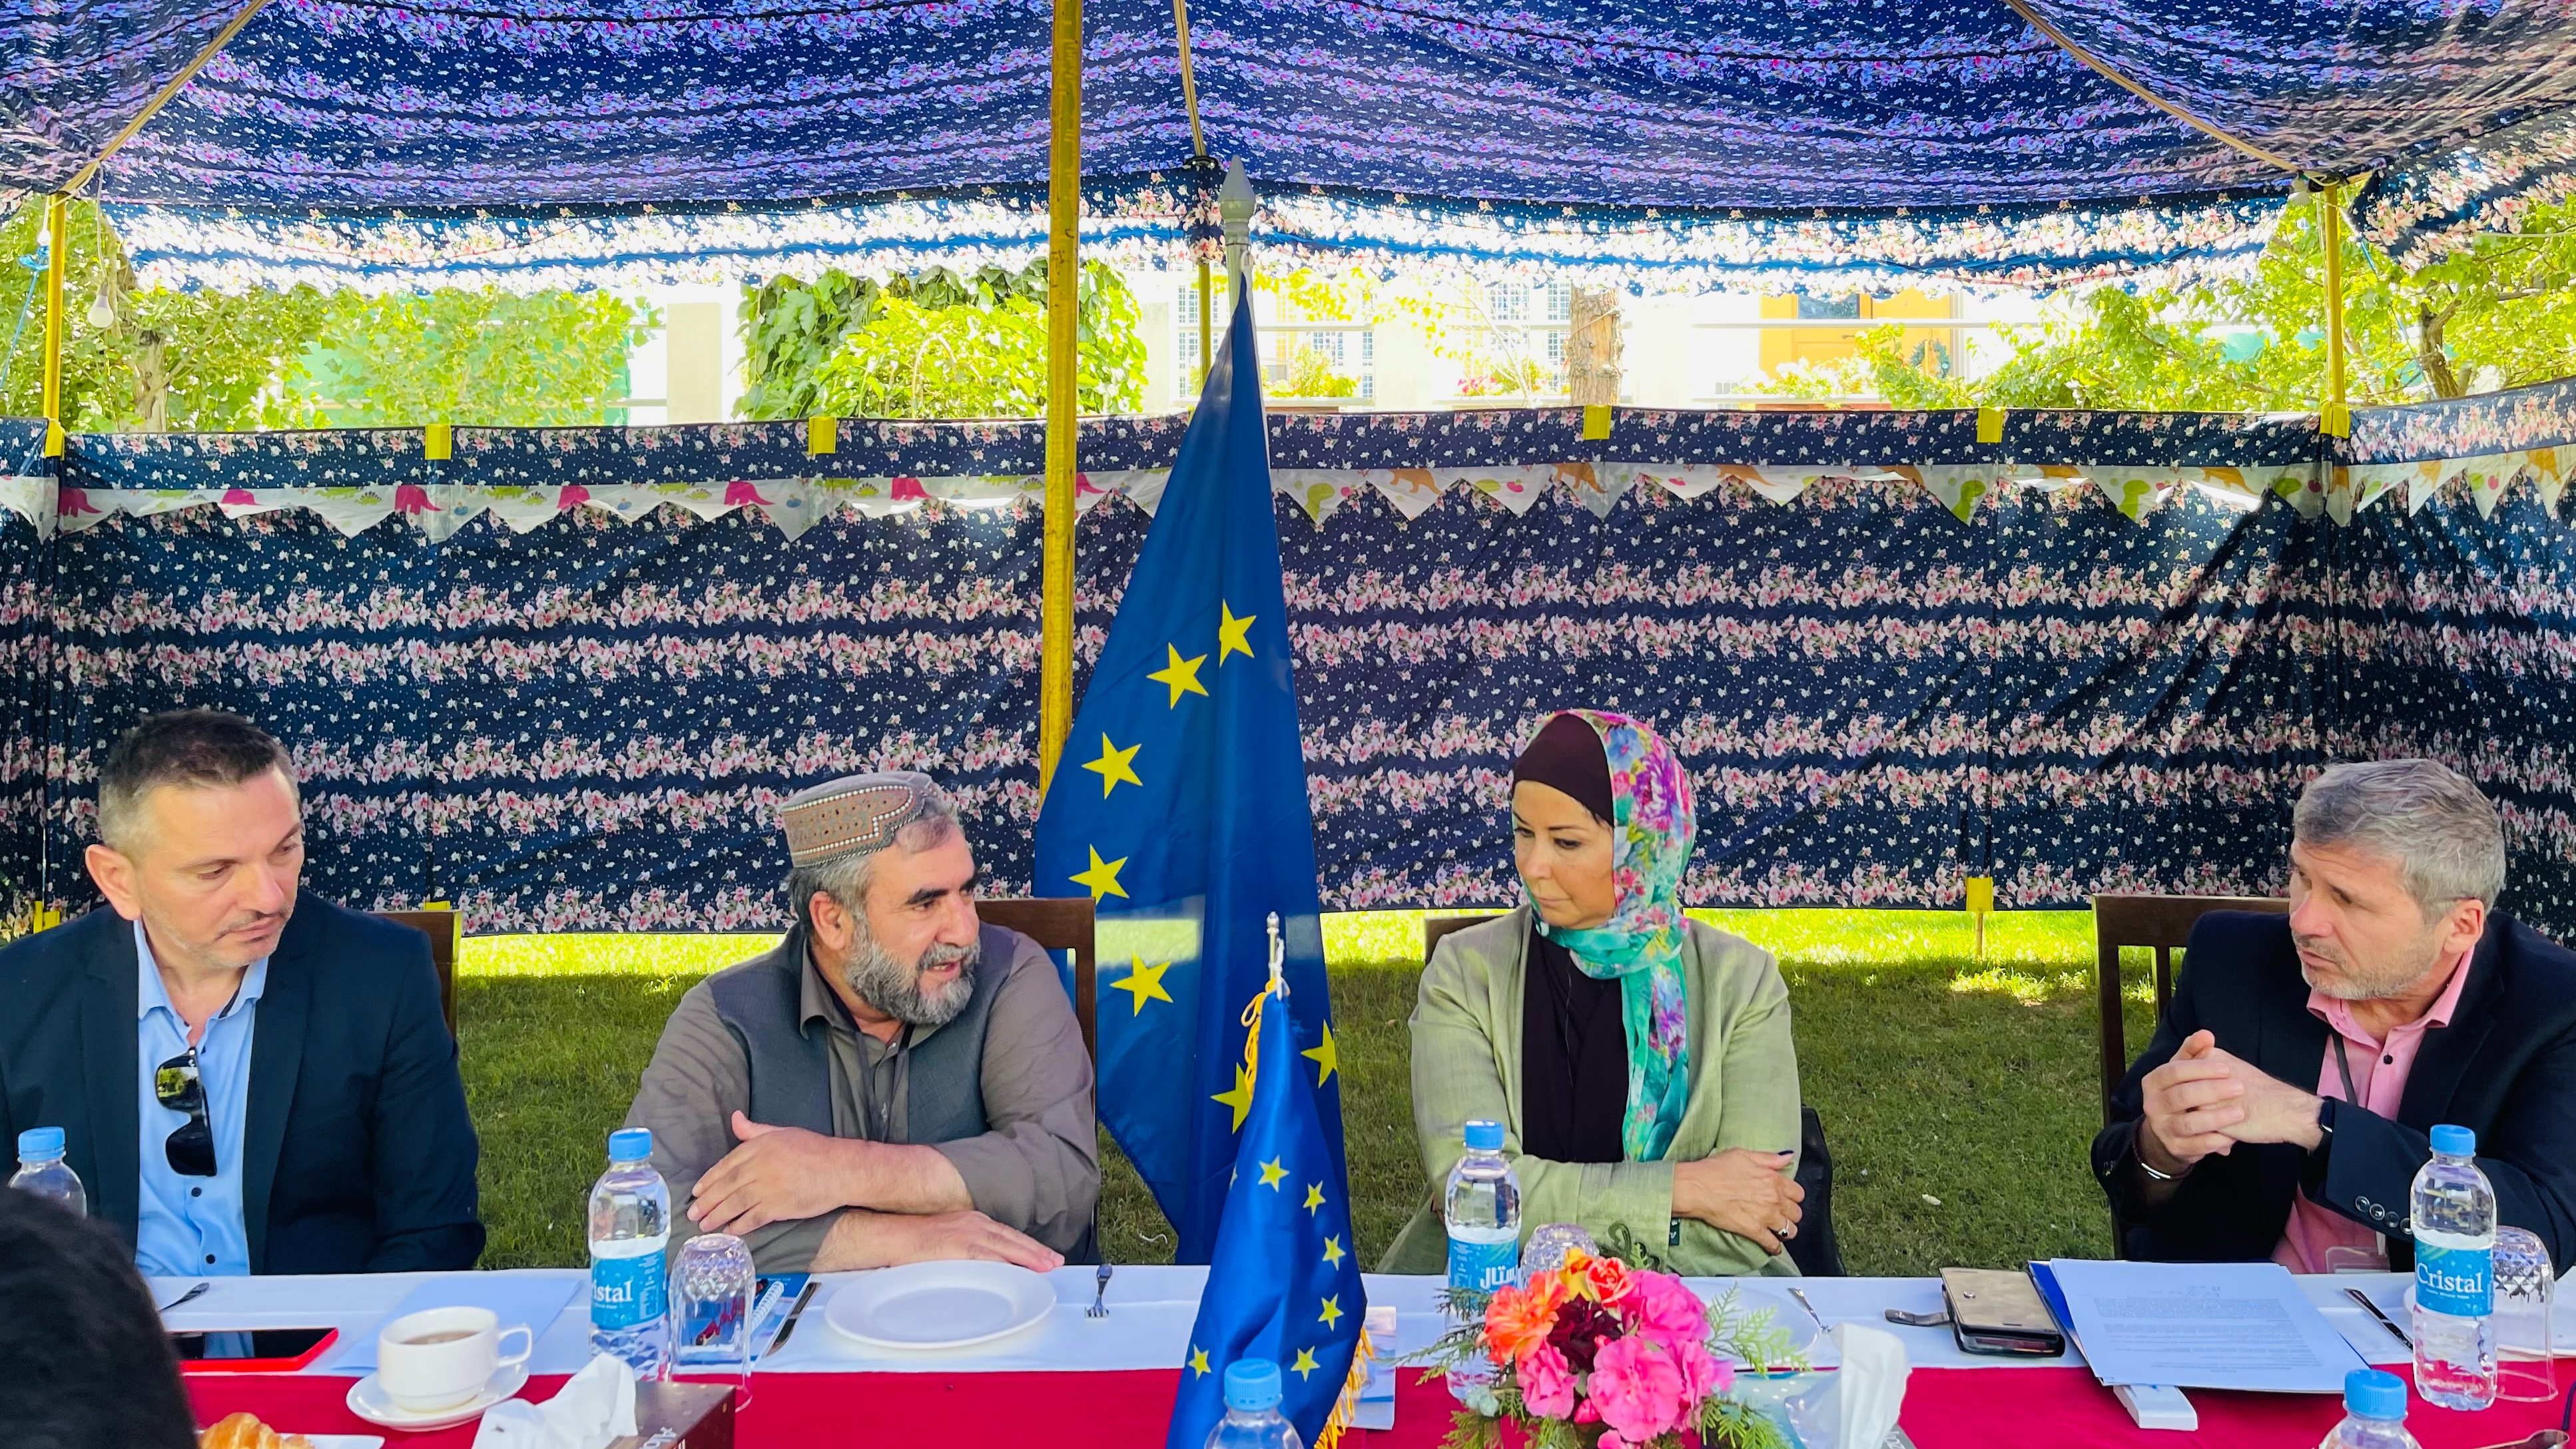 اتحادیۀ اروپا بیش از ۵.۷ میلیون یورو را به دامداران در افغانستان کمک کرد